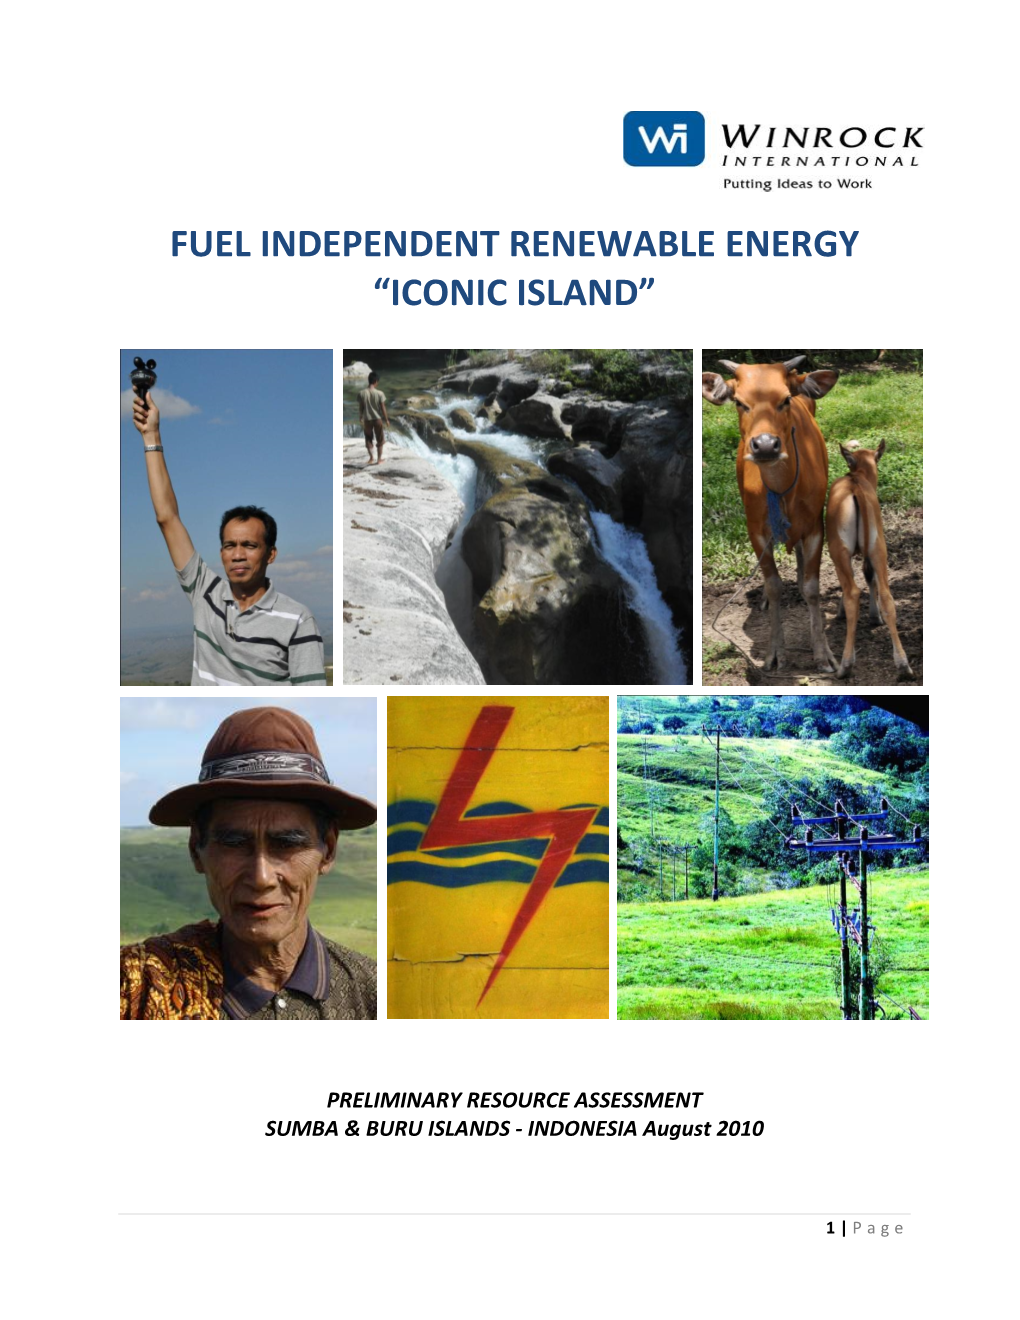 Fuel Independent Renewable Energy “Iconic Island”